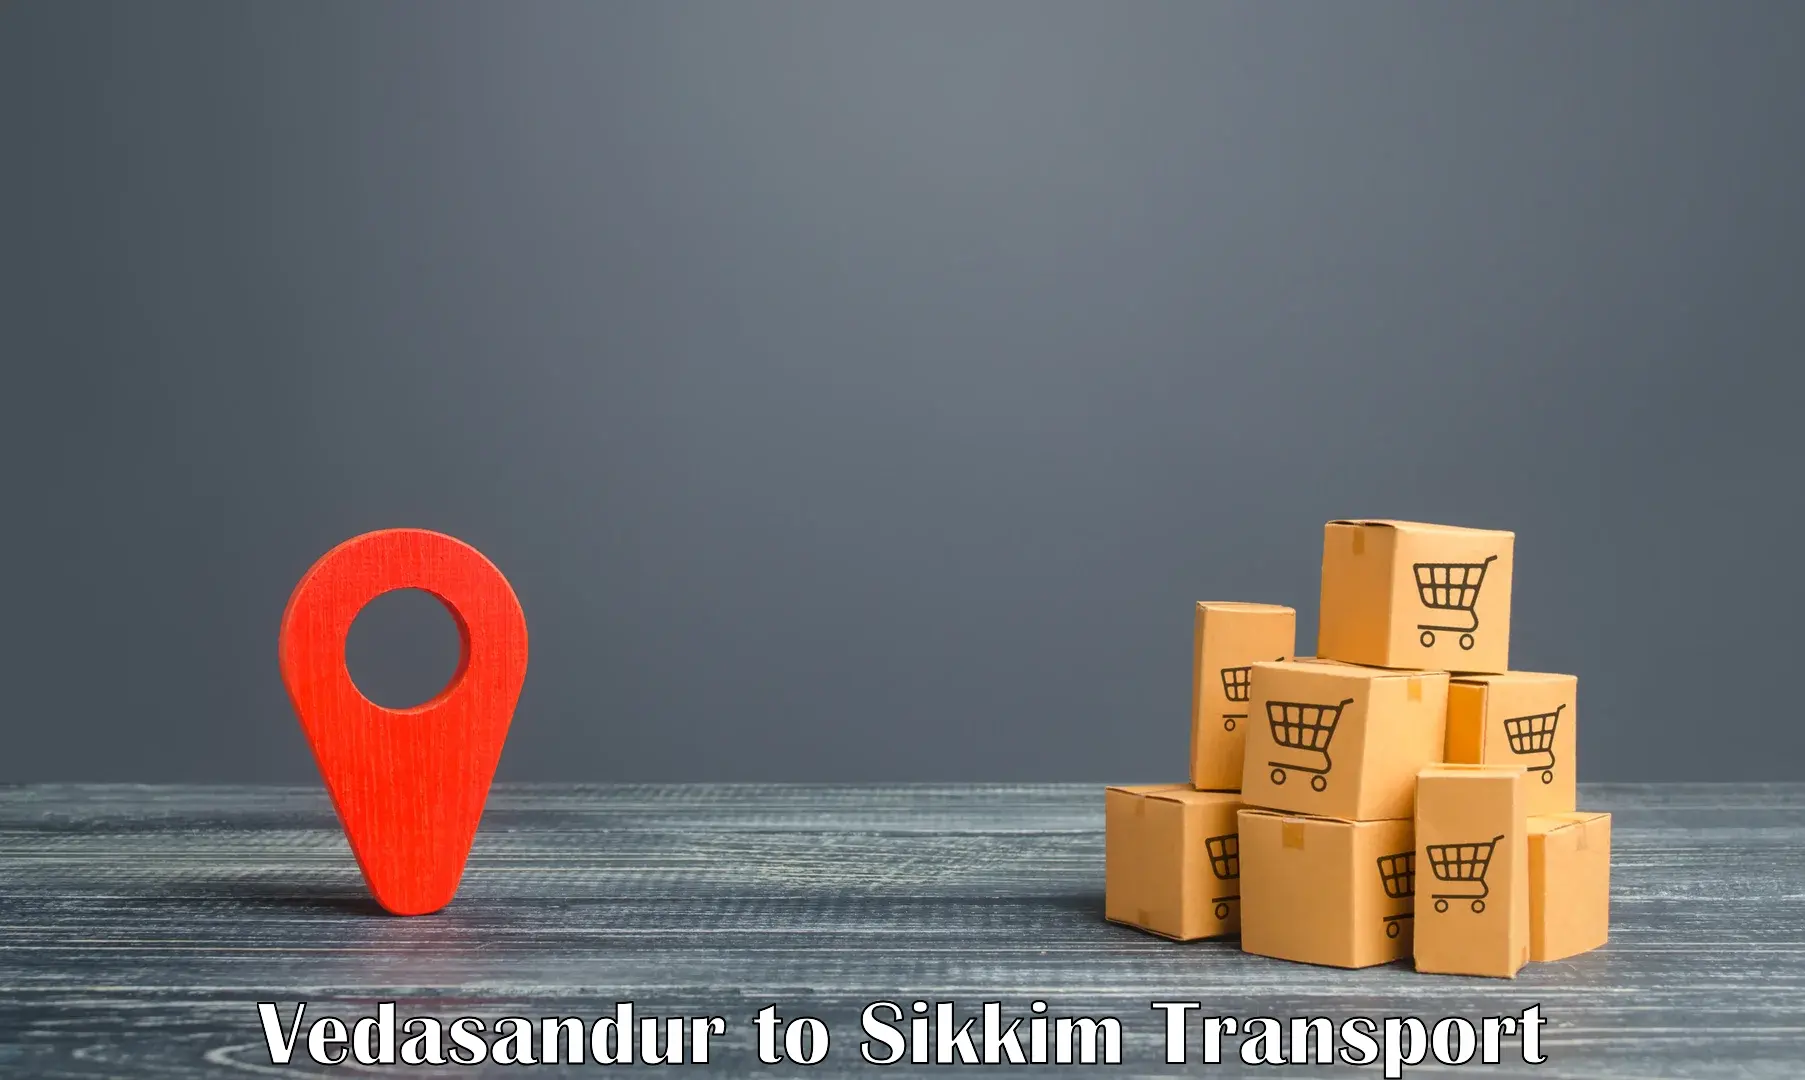 Shipping partner Vedasandur to North Sikkim